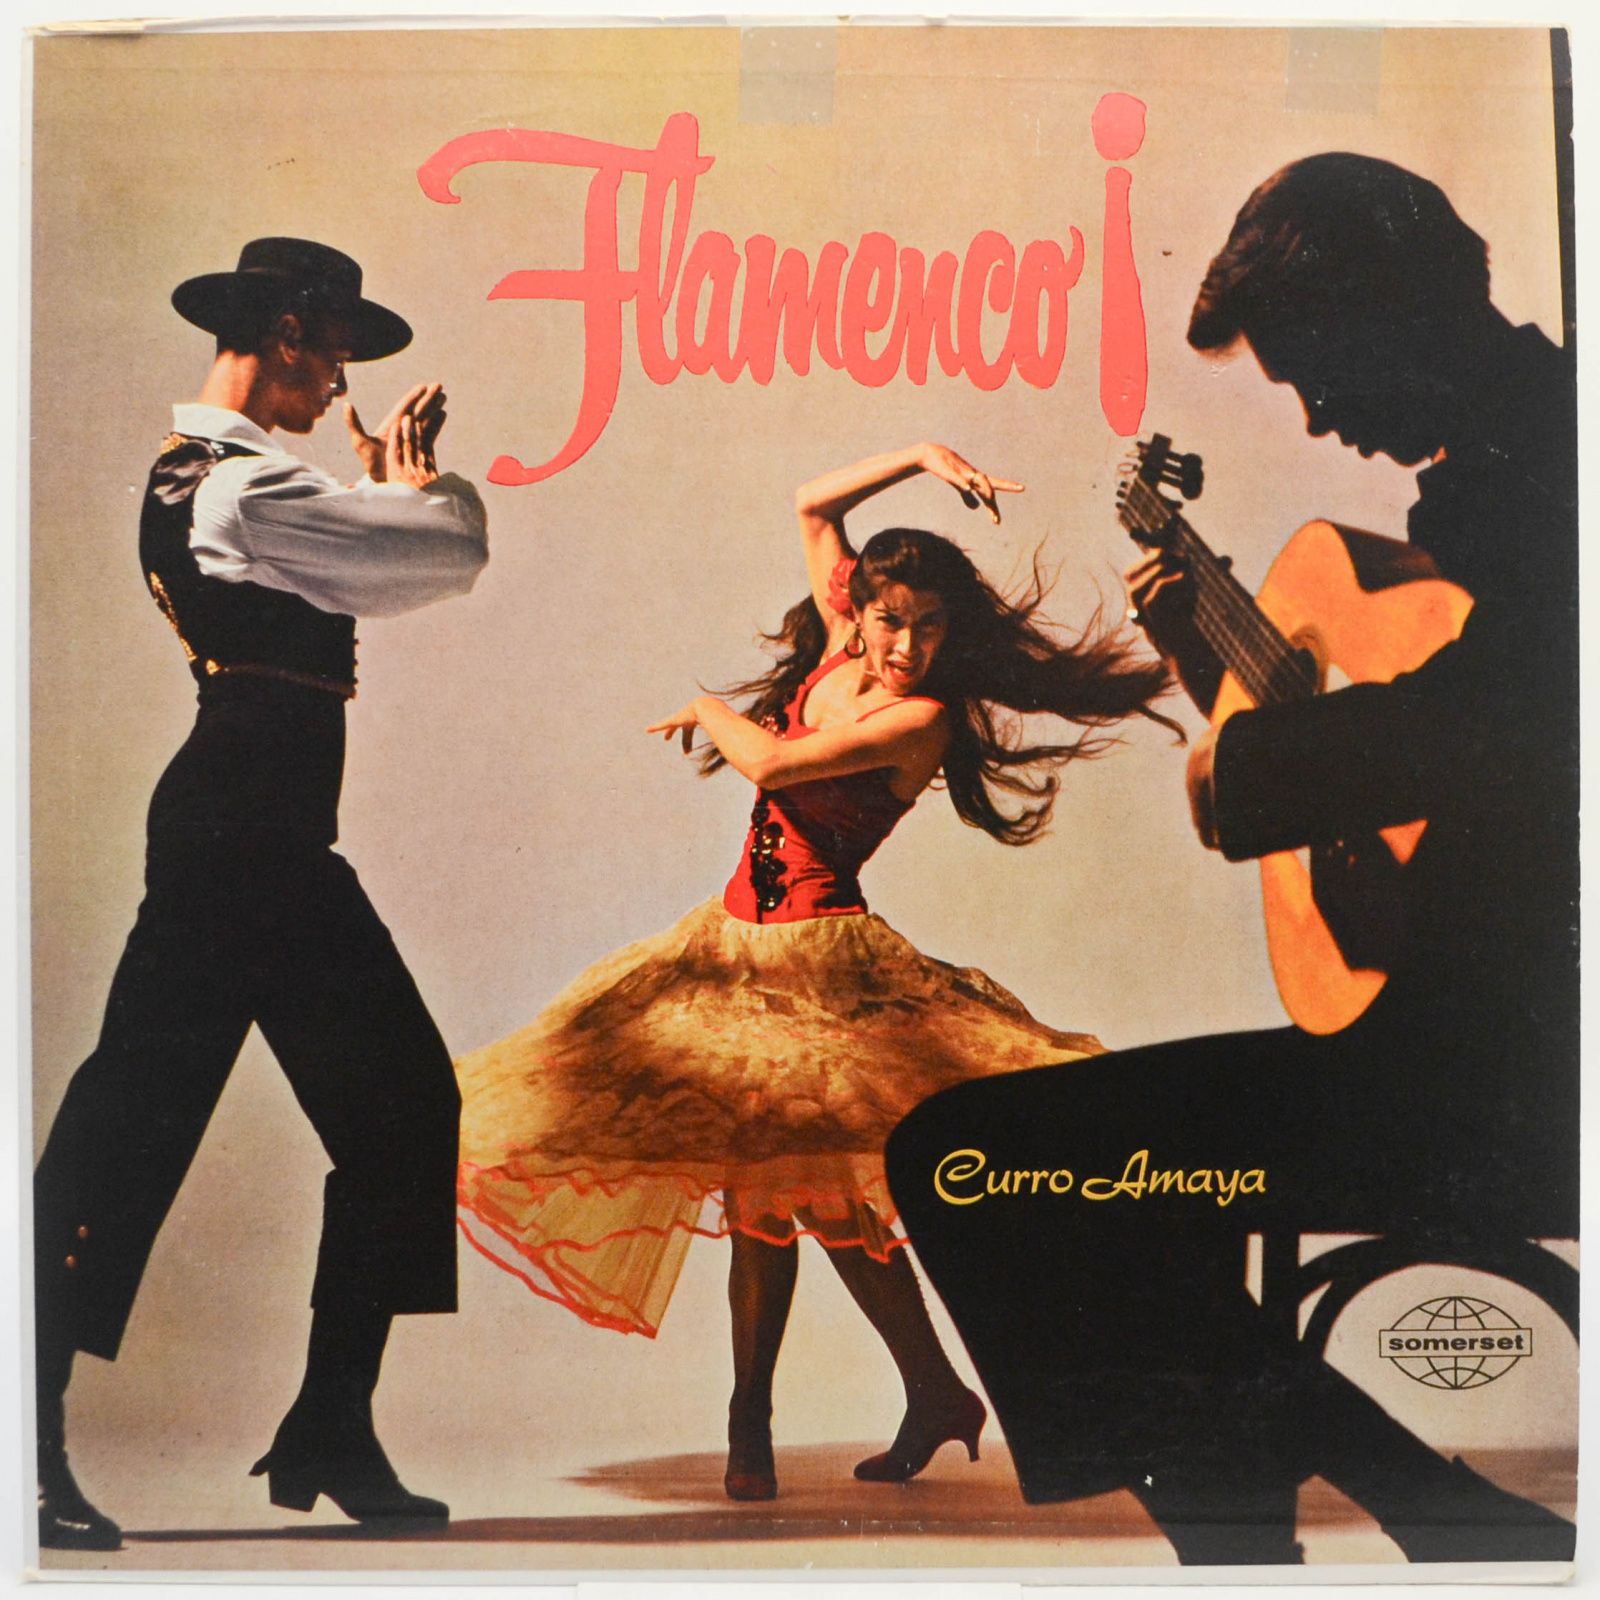 Los Flamencos de España and Curro Amaya — Flamenco, 1959